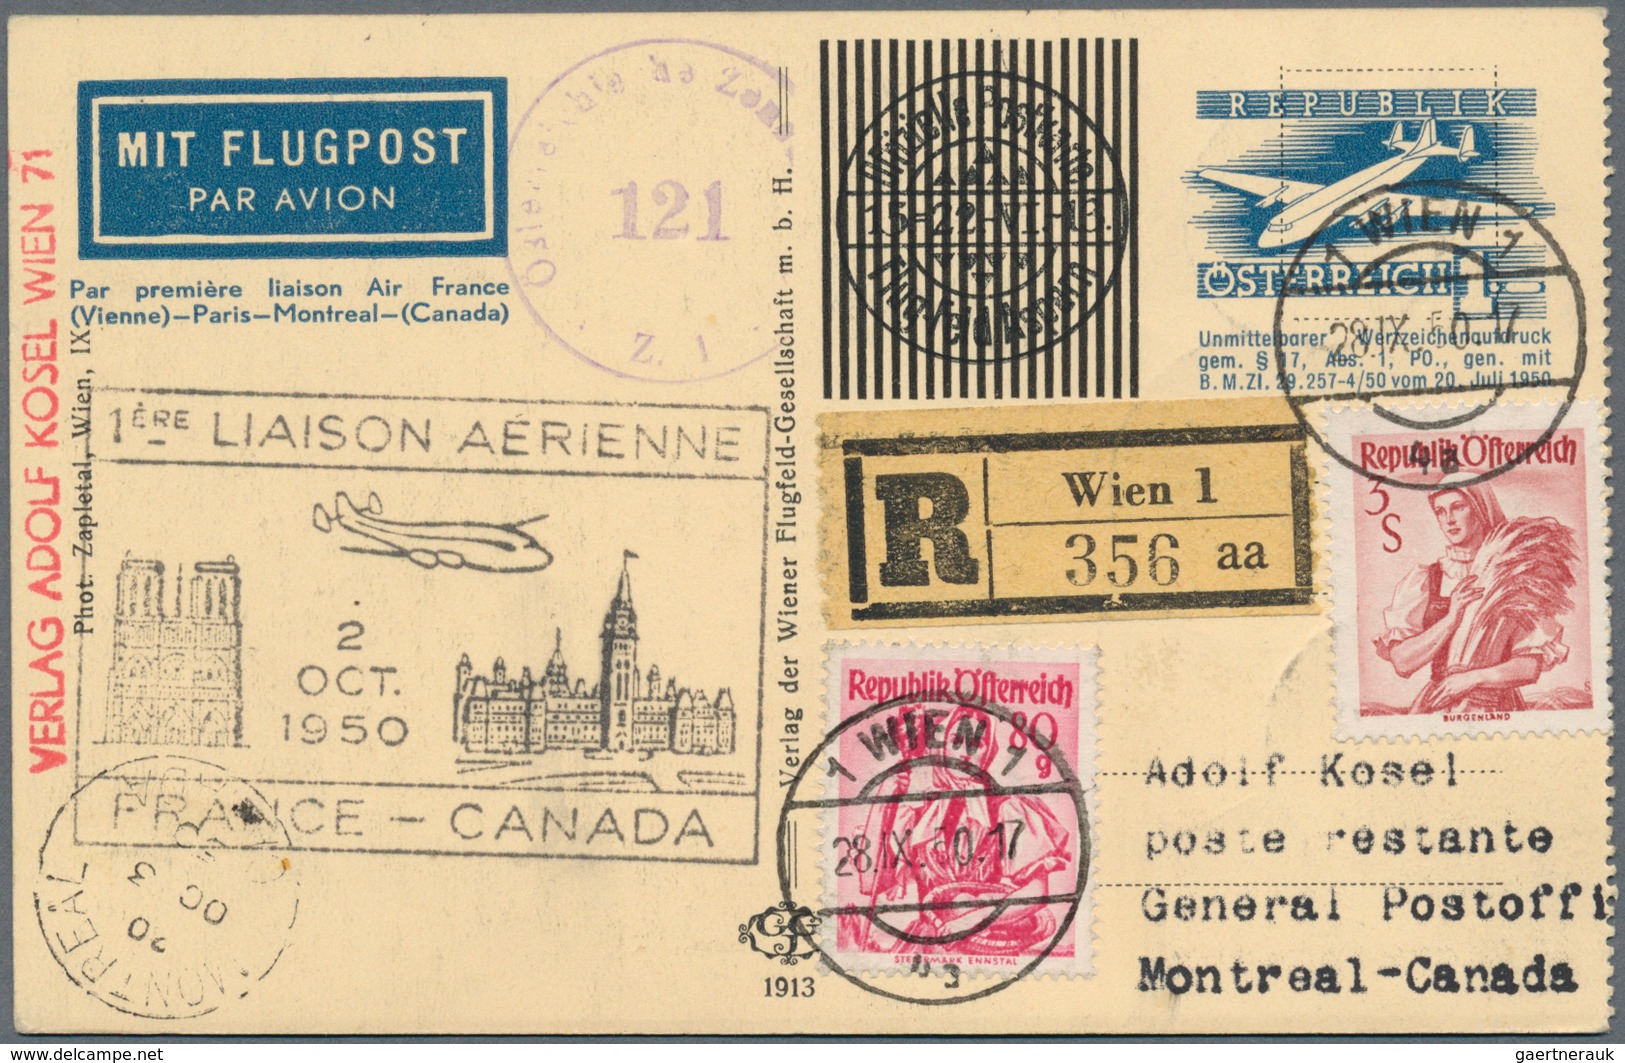 Österreich - Flugpost: 1950, Erstflug Wien-PARIS-MONTREAL(Kanada), 1 S blau Flugpost-Wertstempel, ko